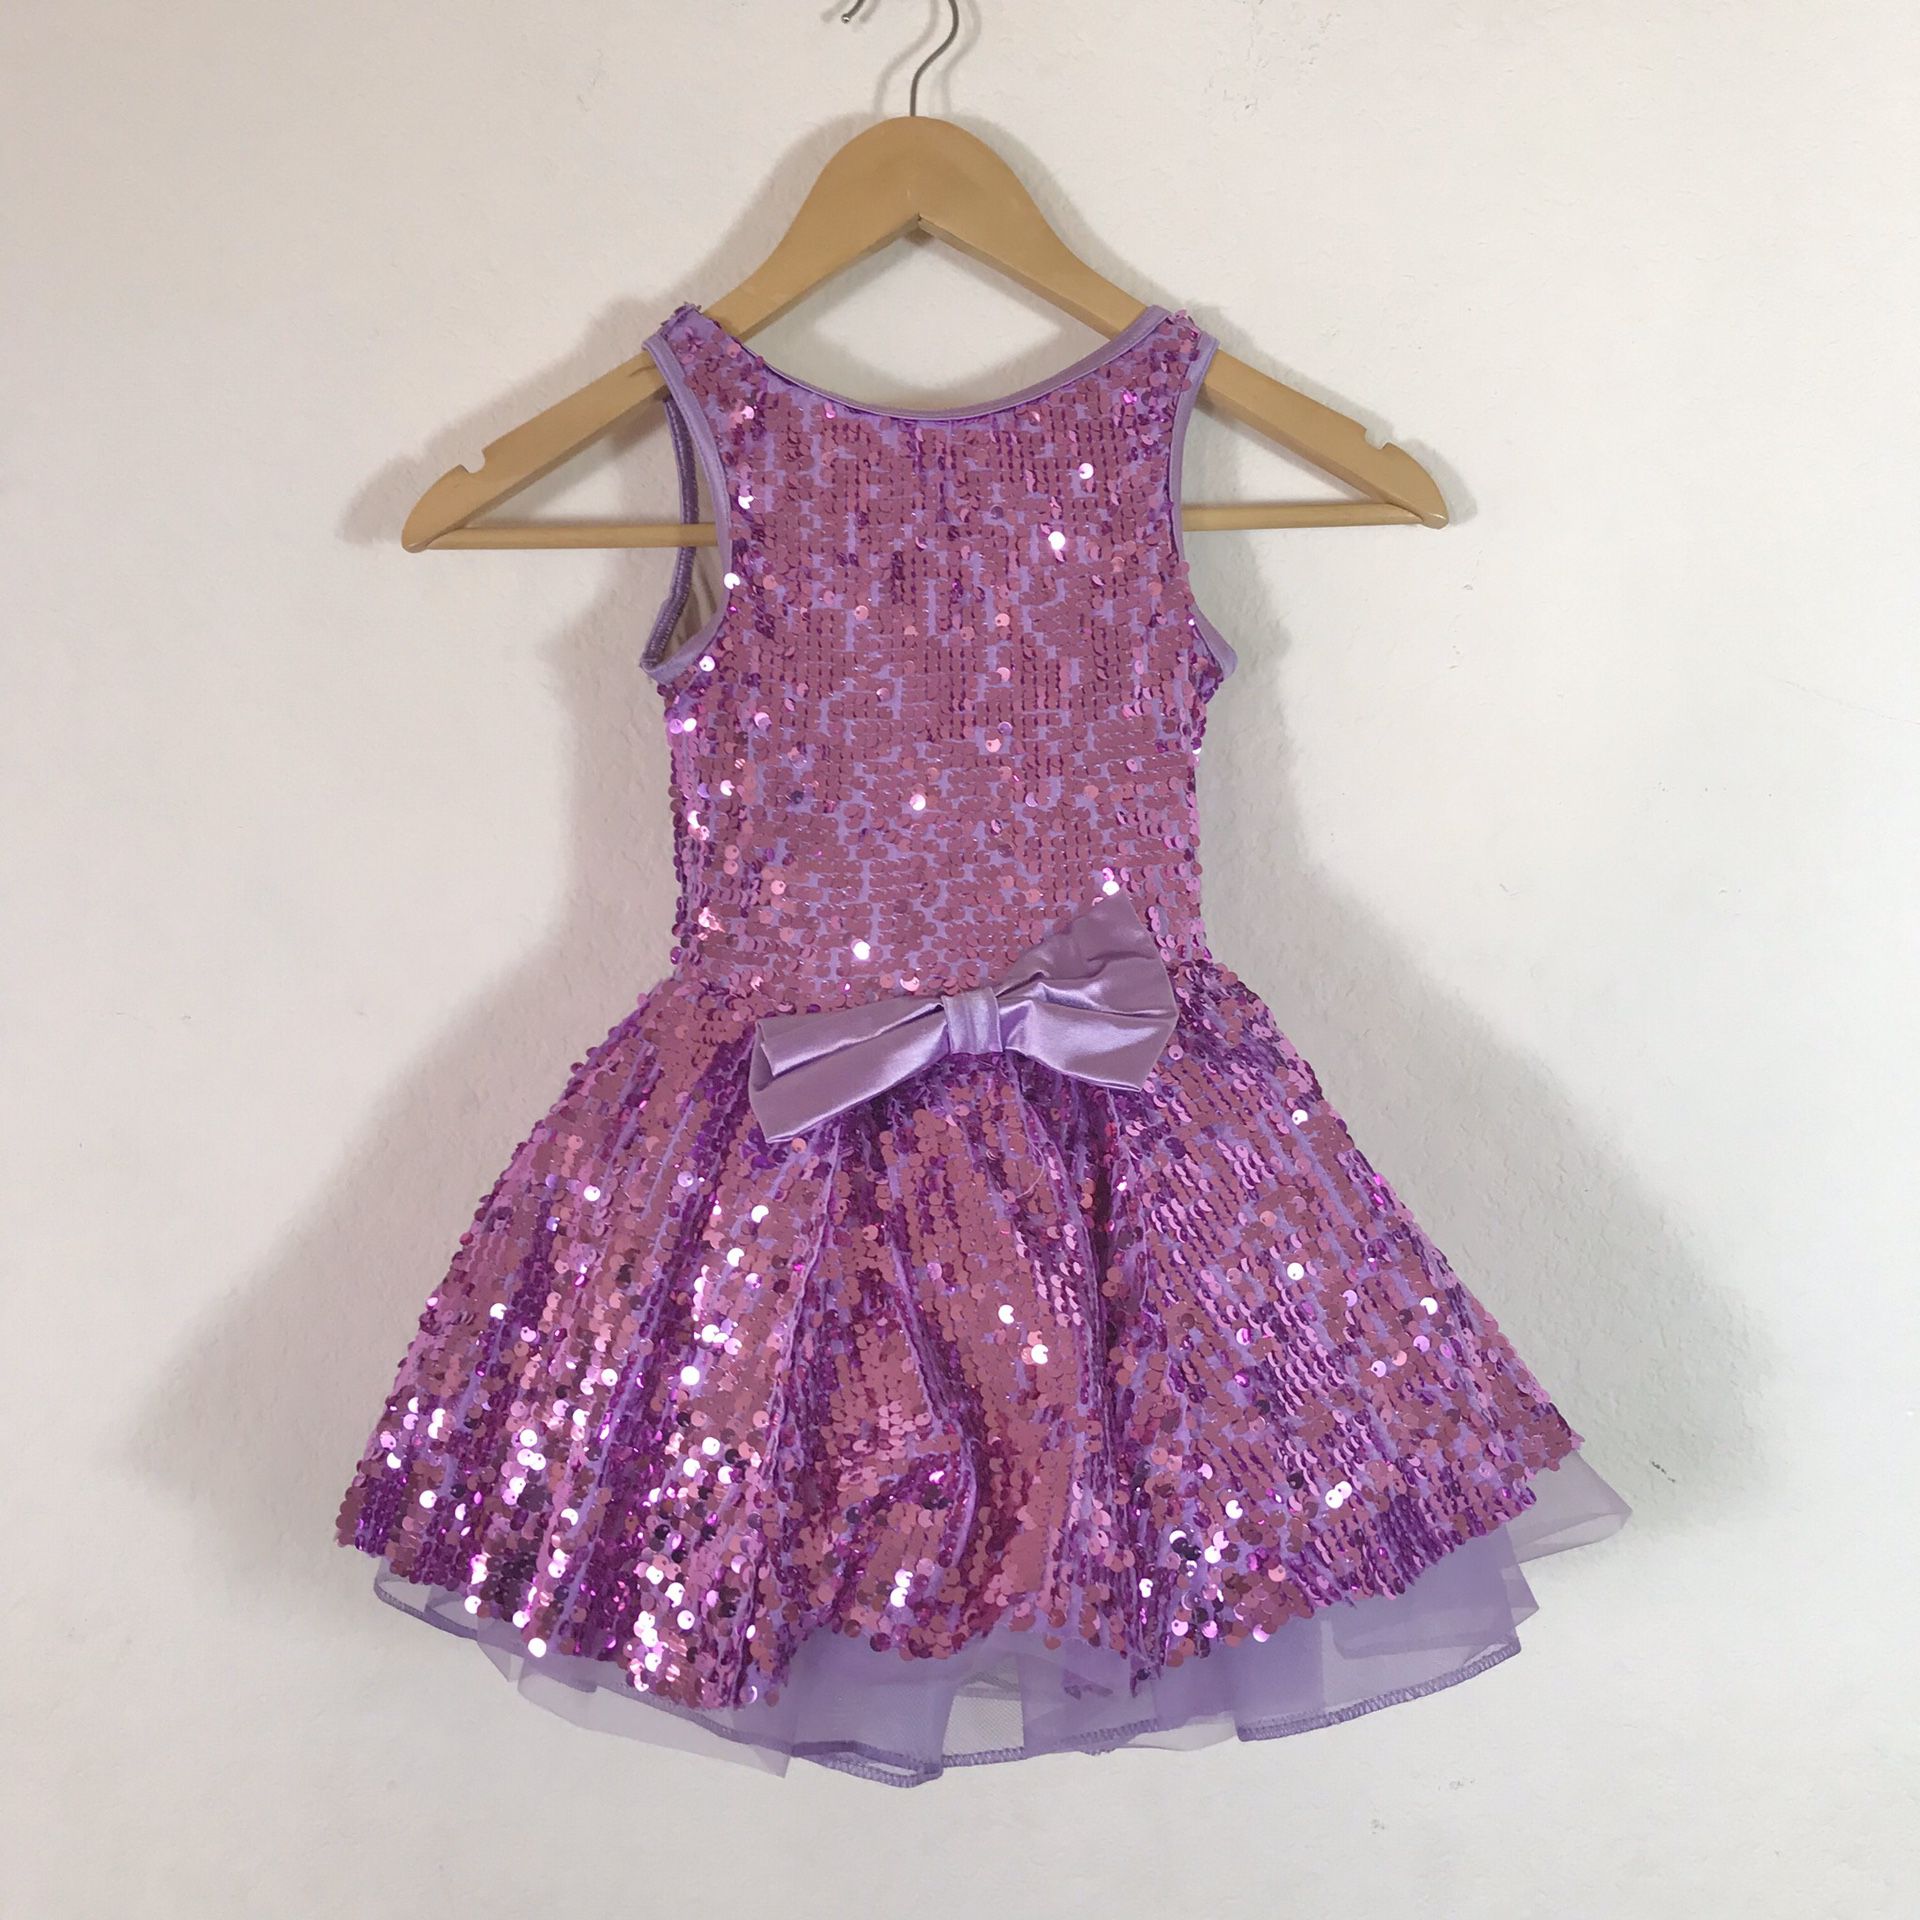 Weissman Dance Ballet Tutu Costume Sequin Dress Size IC 7/8